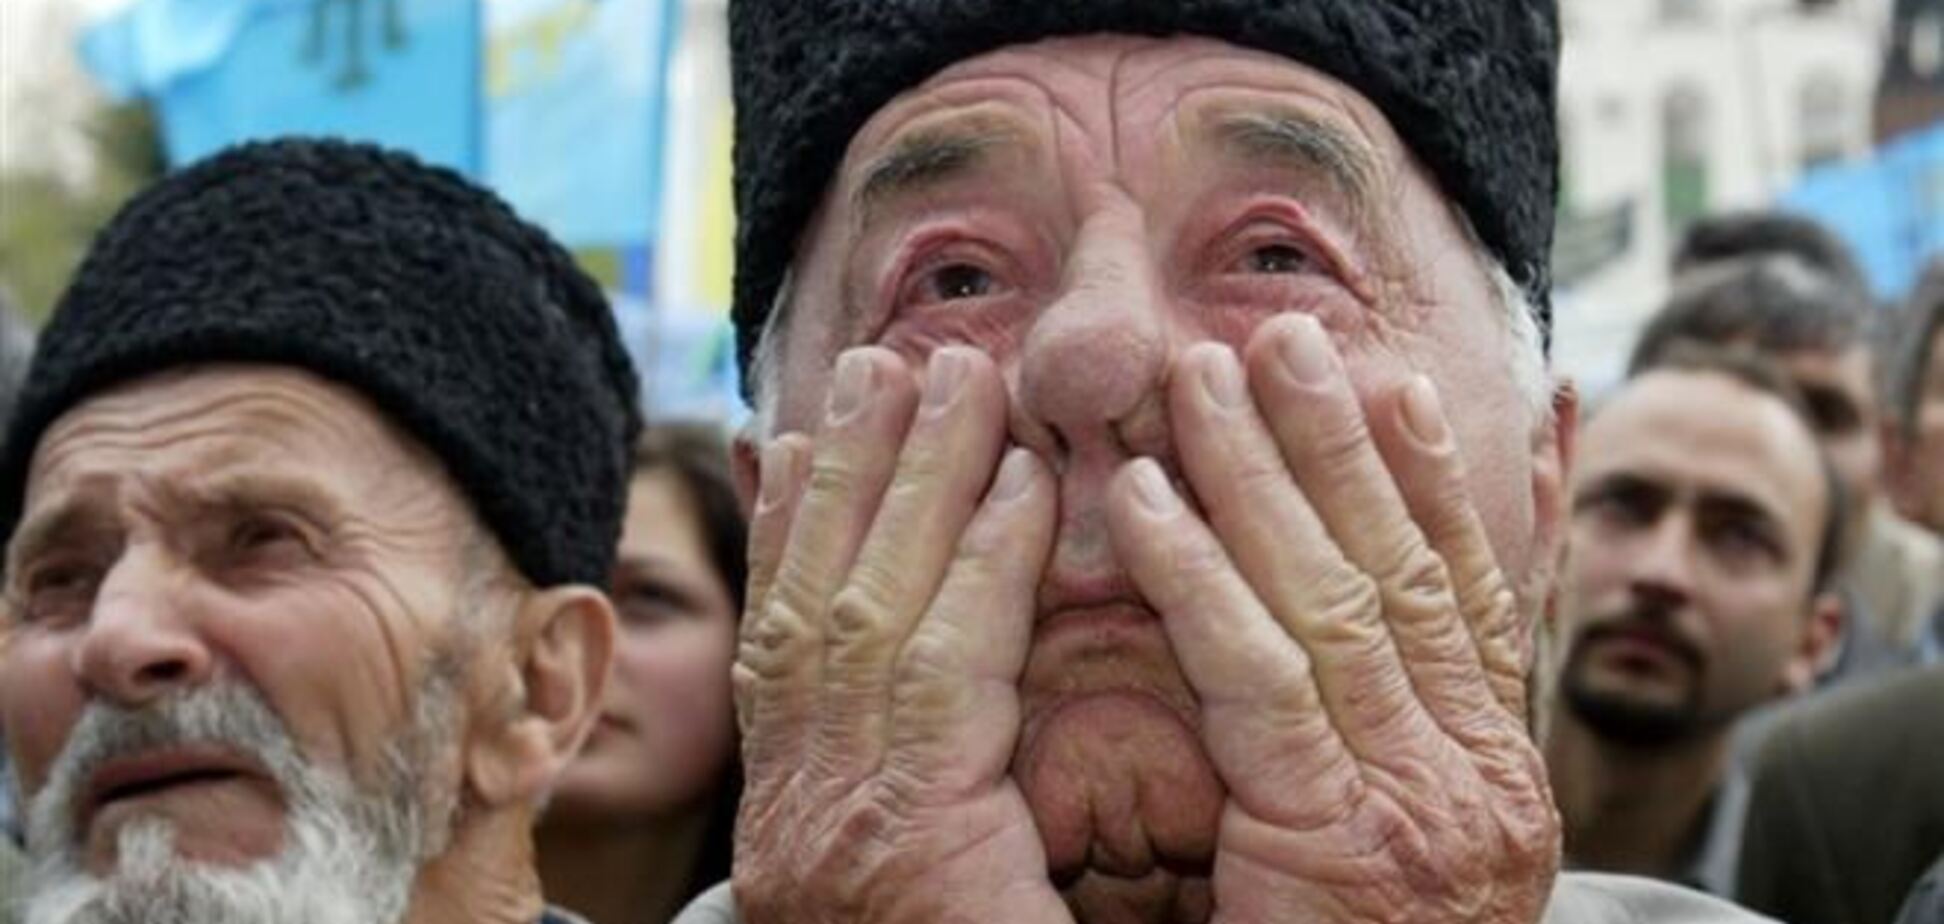 Близько п'яти тисяч татар вже покинули Крим - Джемелі